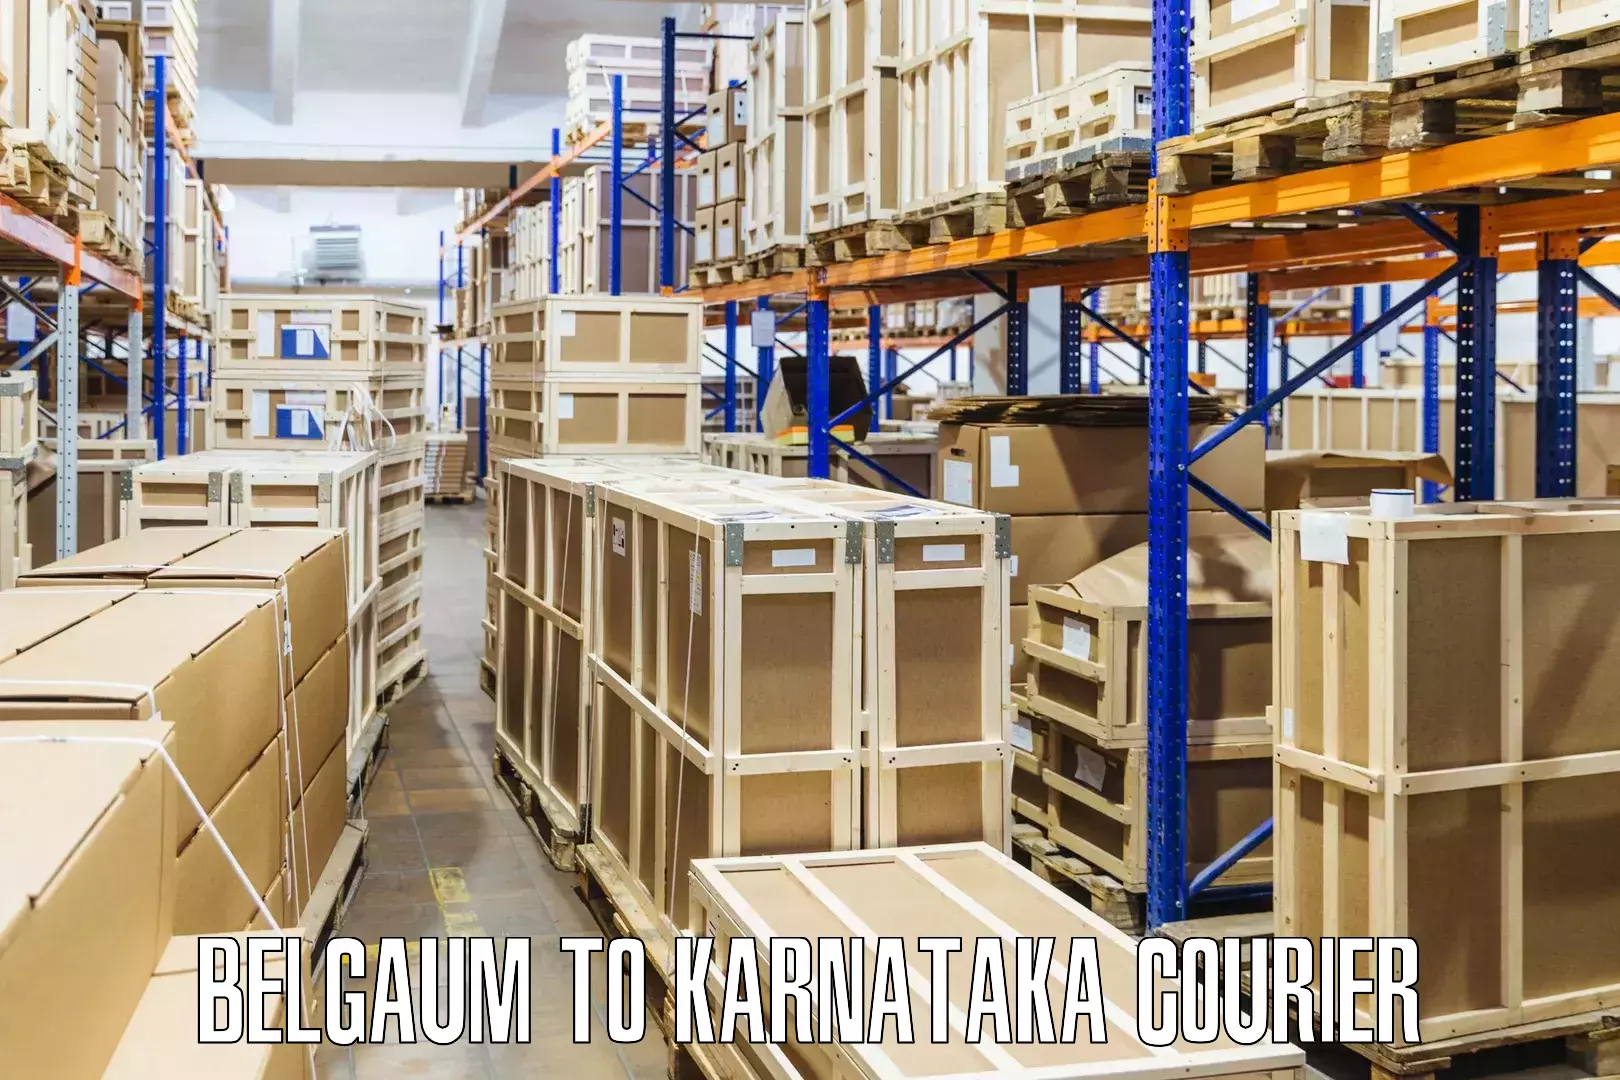 Courier insurance Belgaum to Karnataka